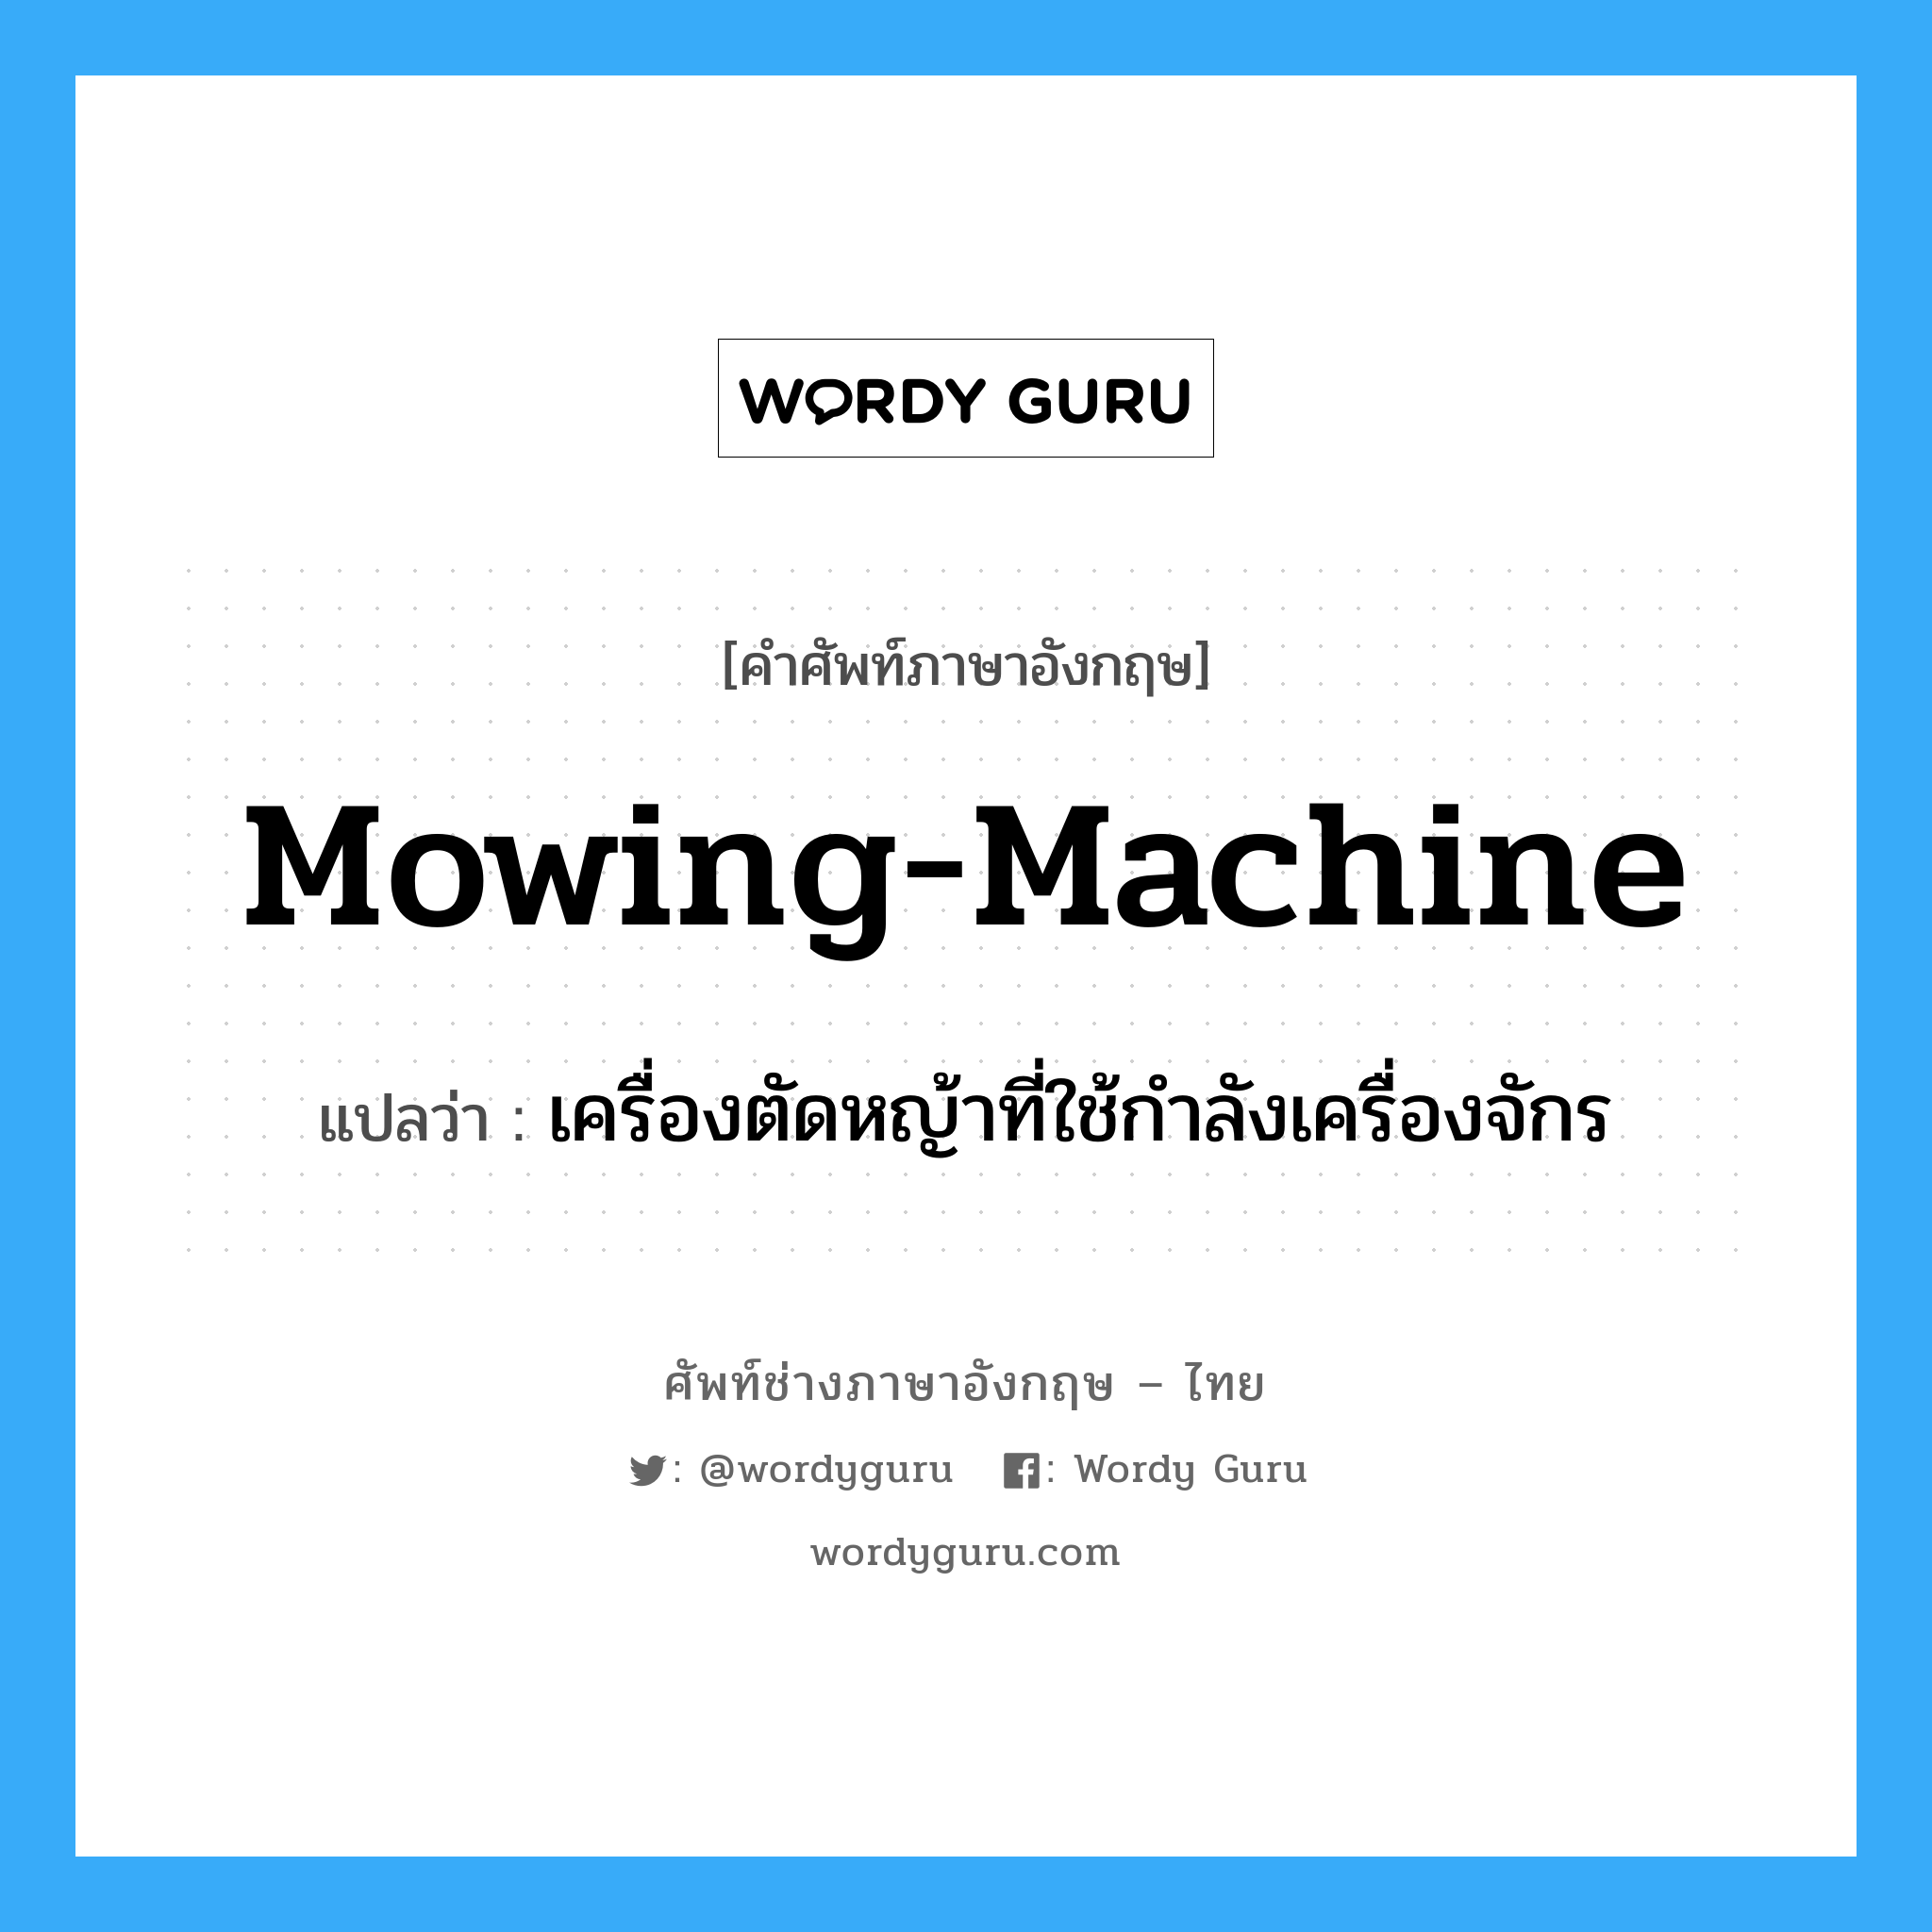 เครื่องตัดหญ้าที่ใช้กำลังเครื่องจักร ภาษาอังกฤษ?, คำศัพท์ช่างภาษาอังกฤษ - ไทย เครื่องตัดหญ้าที่ใช้กำลังเครื่องจักร คำศัพท์ภาษาอังกฤษ เครื่องตัดหญ้าที่ใช้กำลังเครื่องจักร แปลว่า mowing-machine